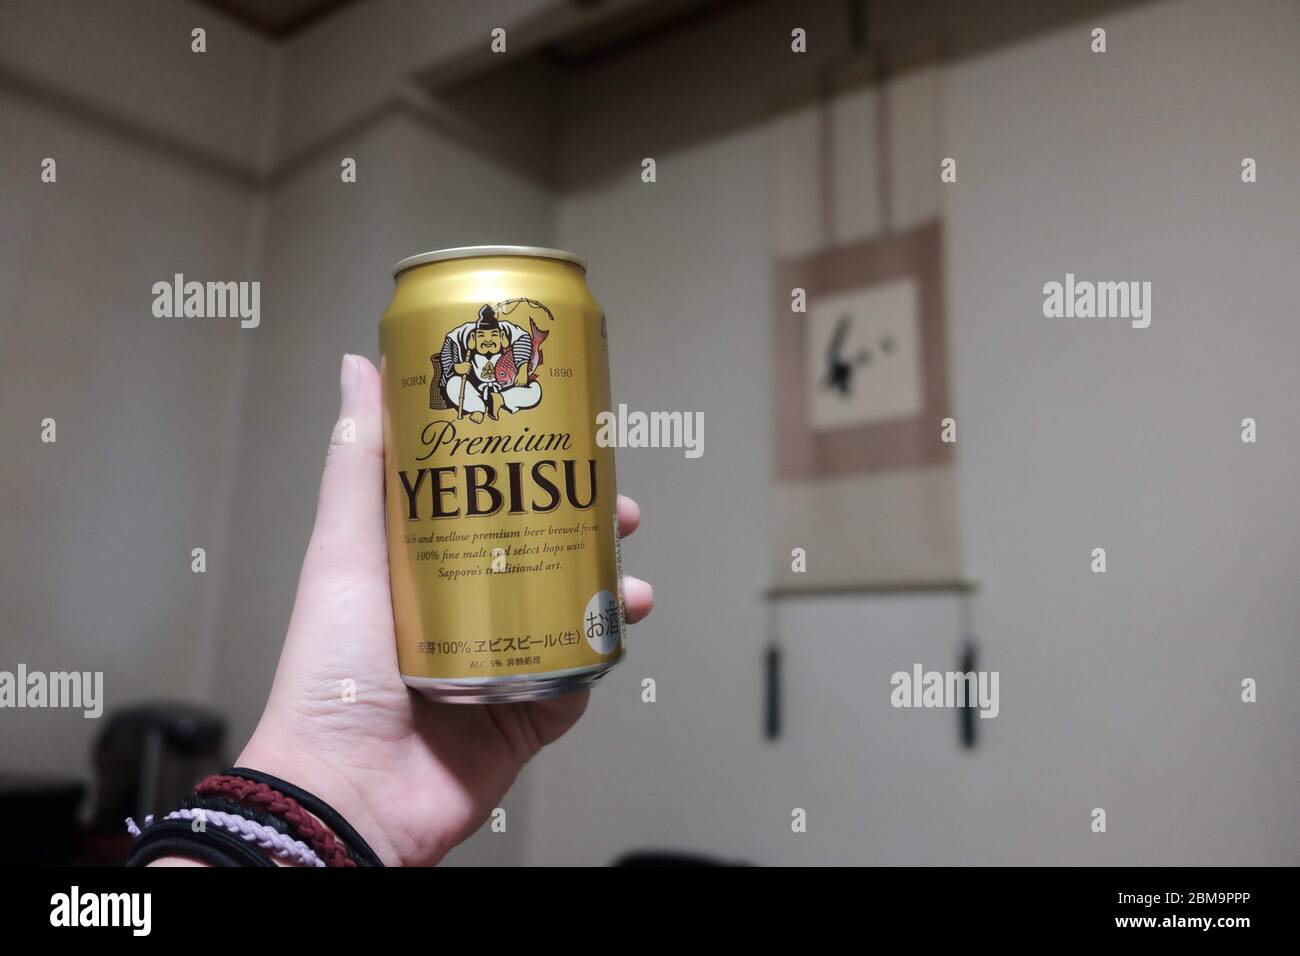 Yebisu Beer in Hand in Room, Japan Stock Photo